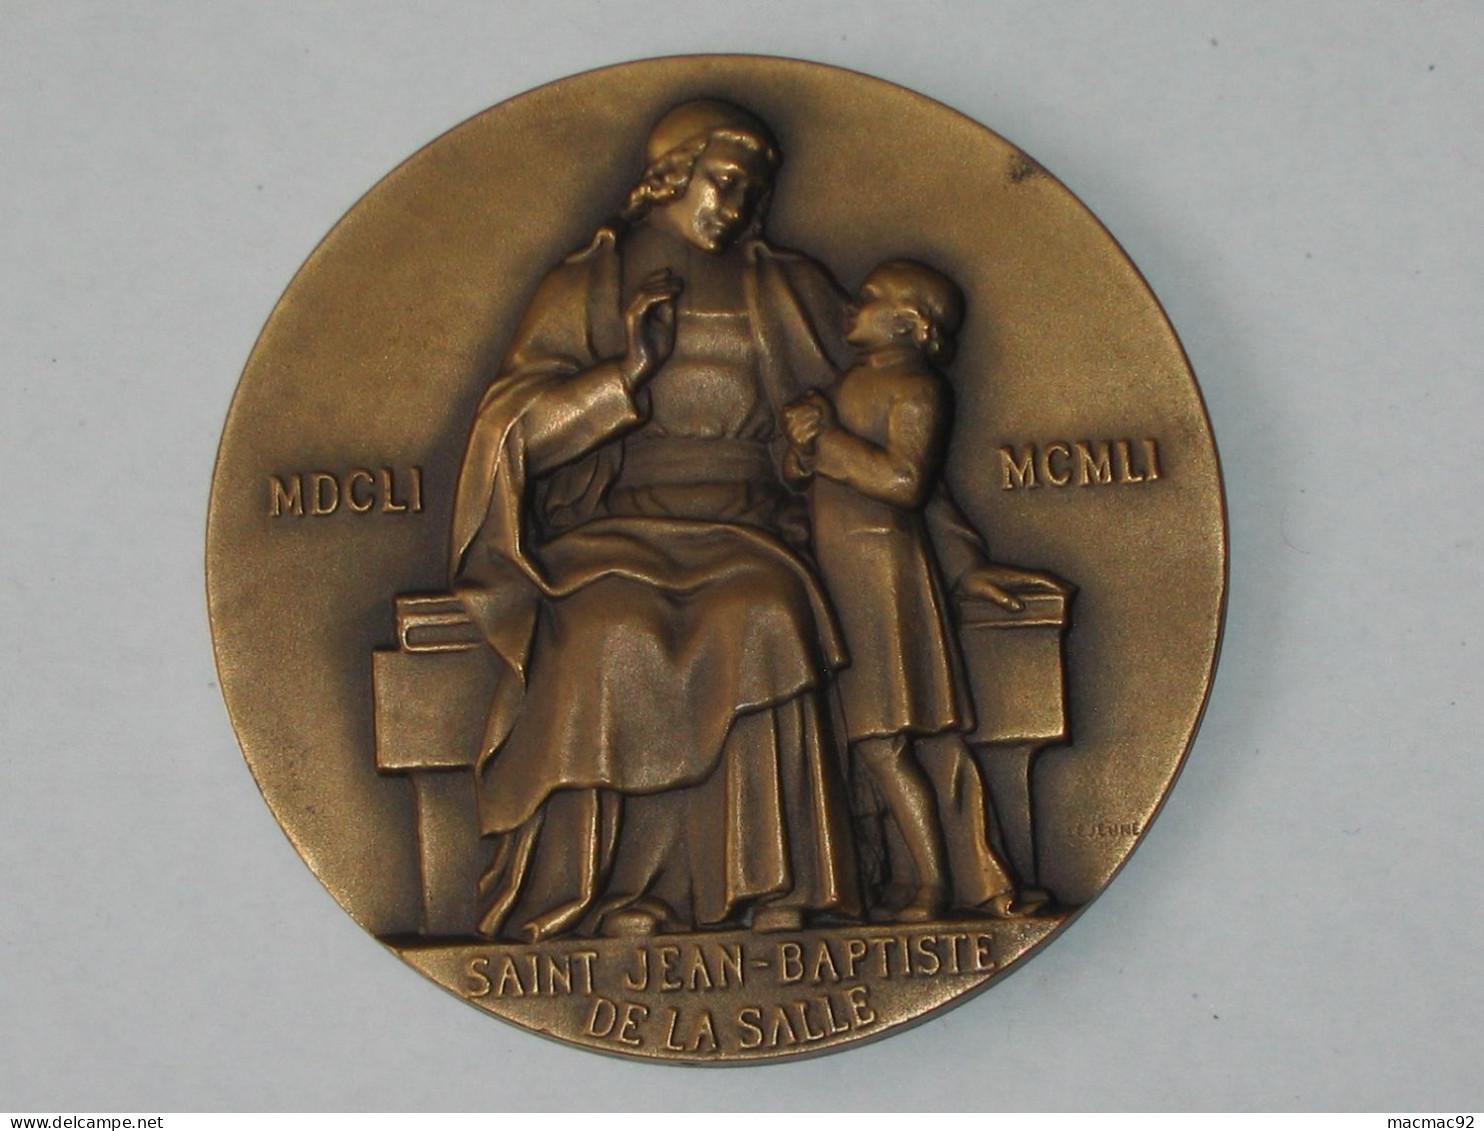 Médaille SAINT JEAN-BAPTISTE DE LA SALLE  - MDCLI-MCMLI **** EN ACHAT IMMEDIAT **** - Royal / Of Nobility